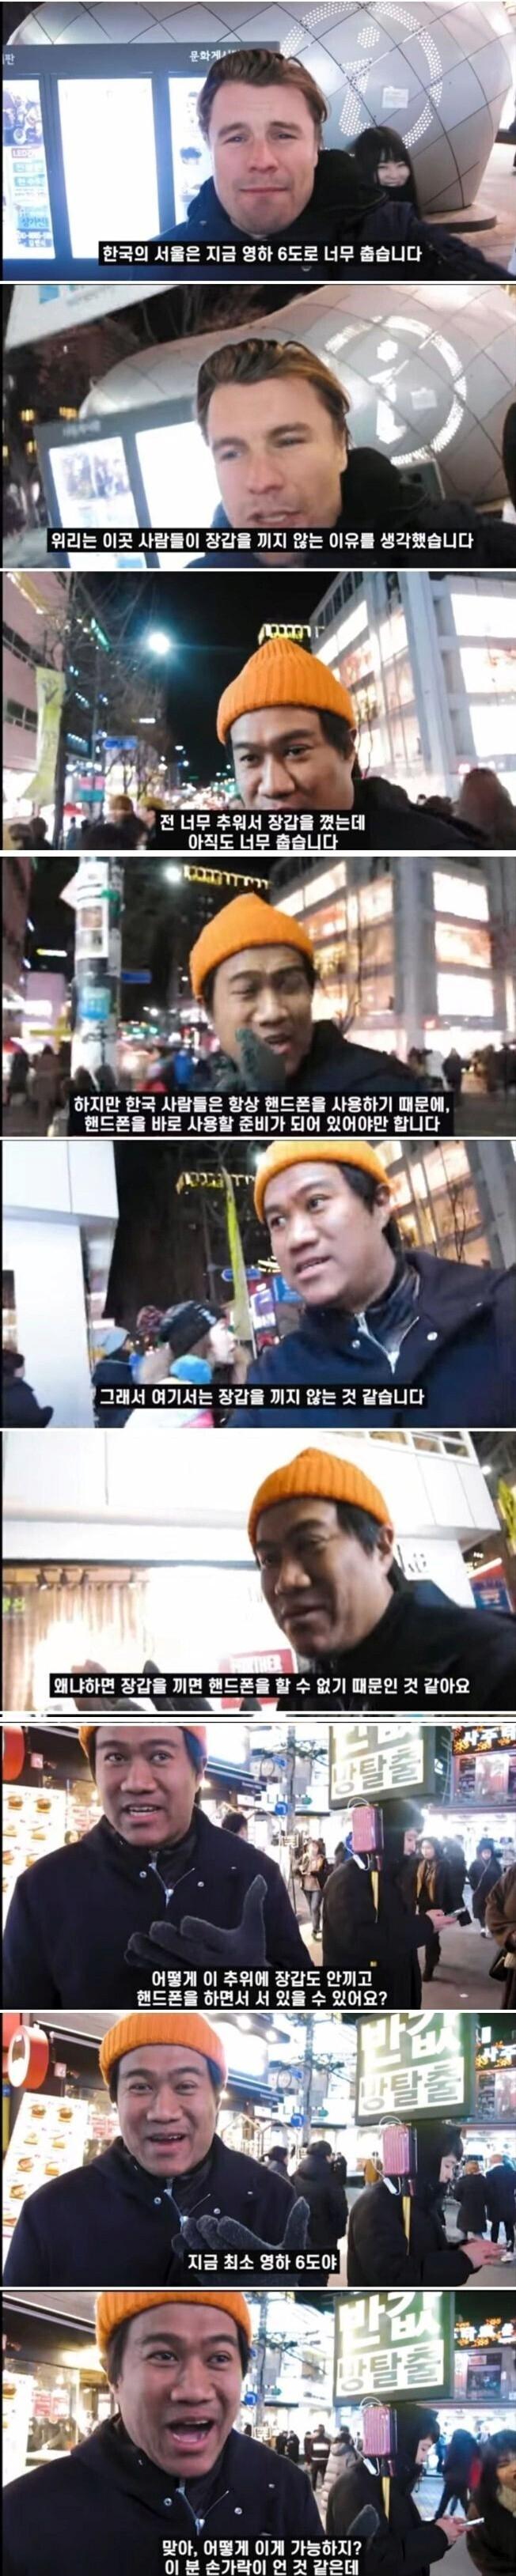 외국인들이 놀라는 한국의 겨울 풍경.jpg